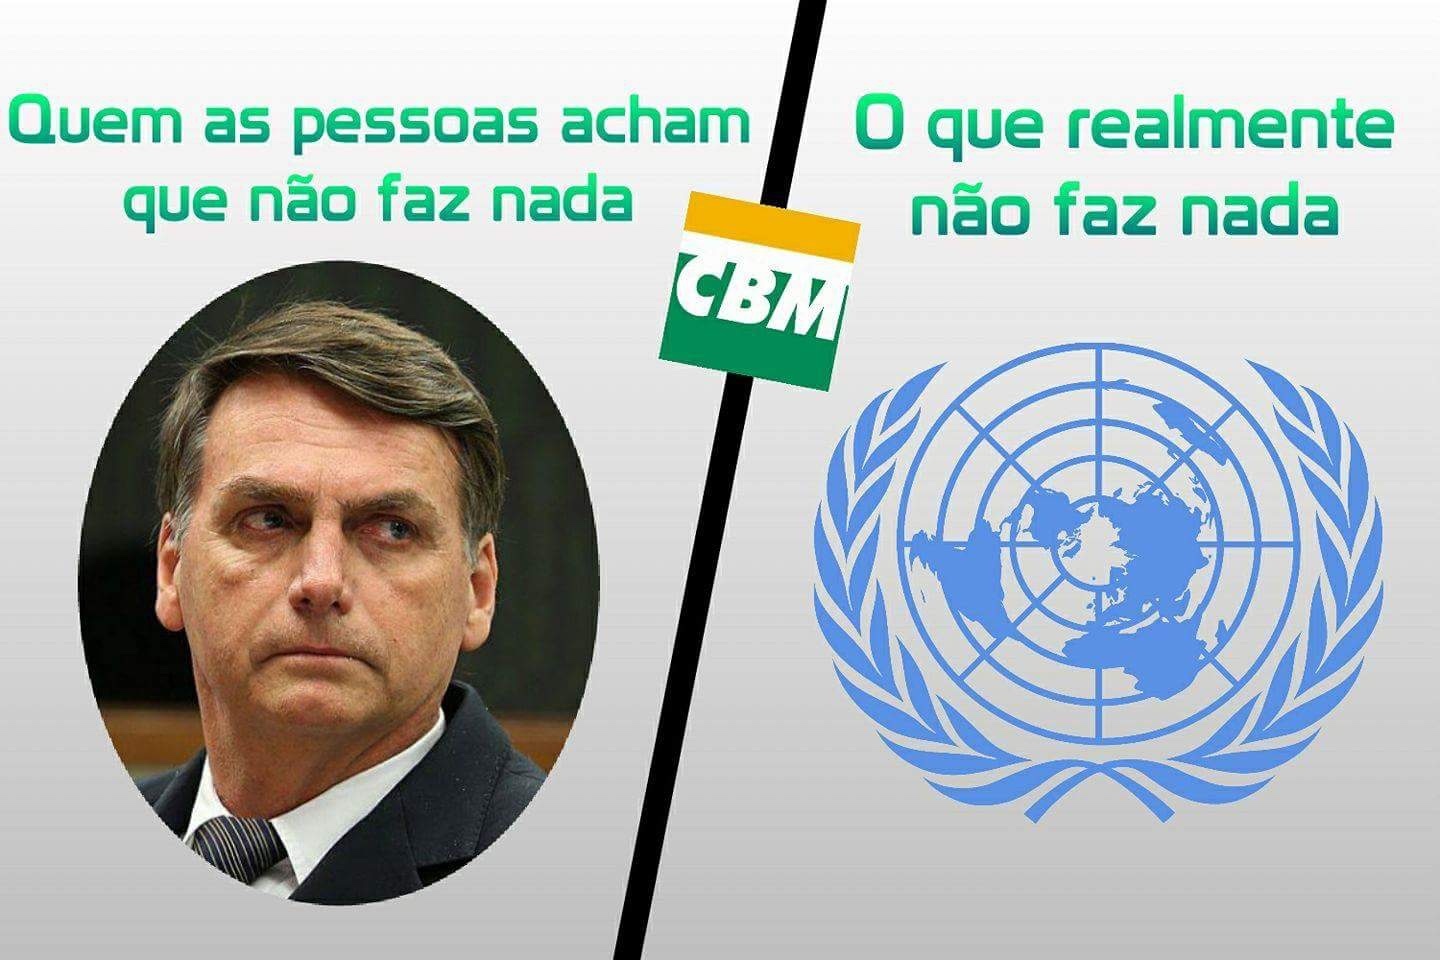 nao defendo Bolsonaro, defendo o certo, e o que a mídia faz com ele é de uma hipocrisia imensa - meme